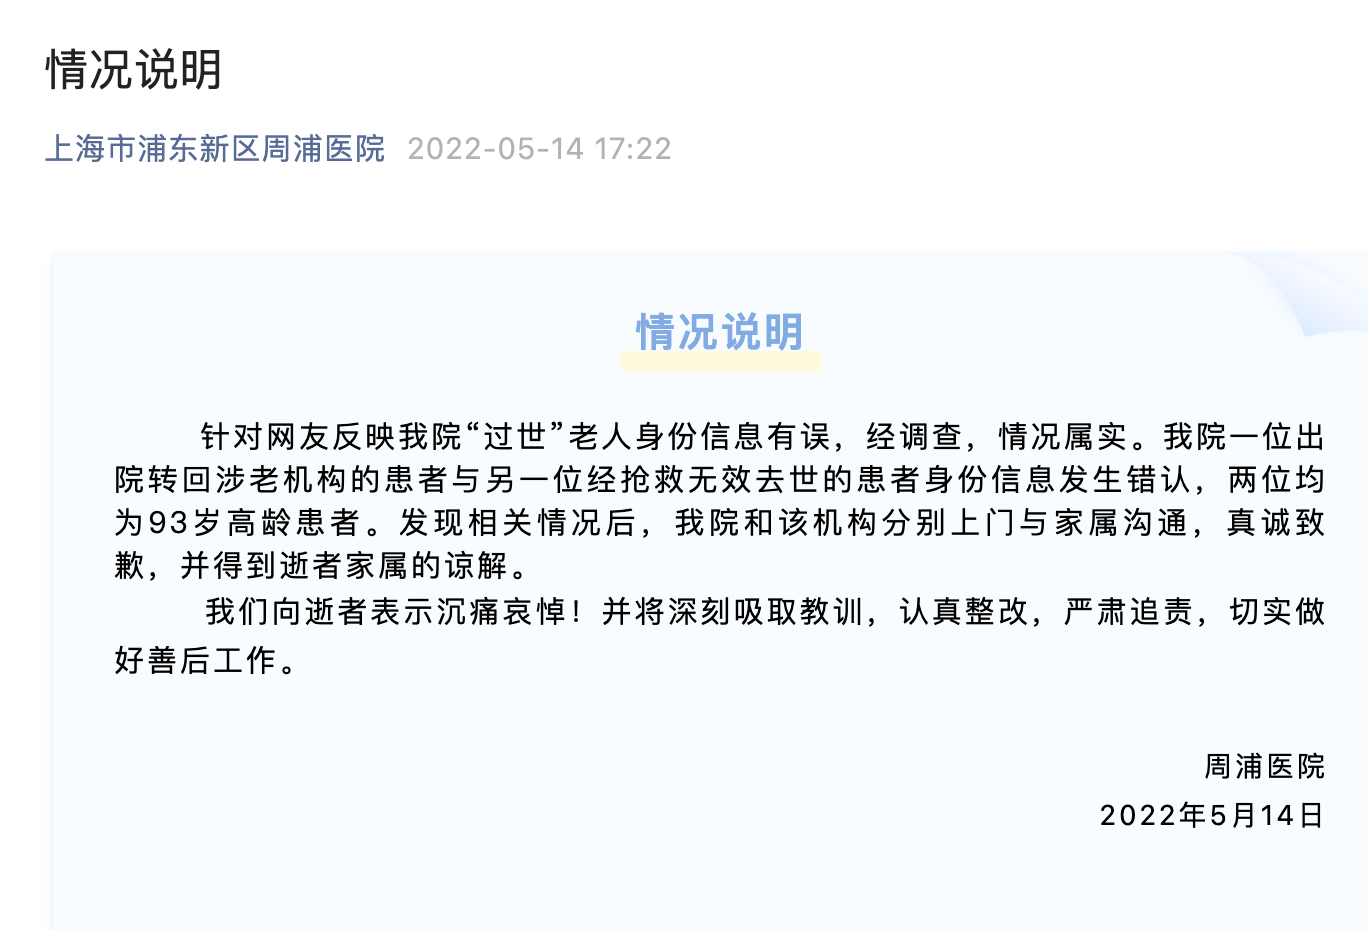 上海一老人“死而复生” 涉事医院致歉